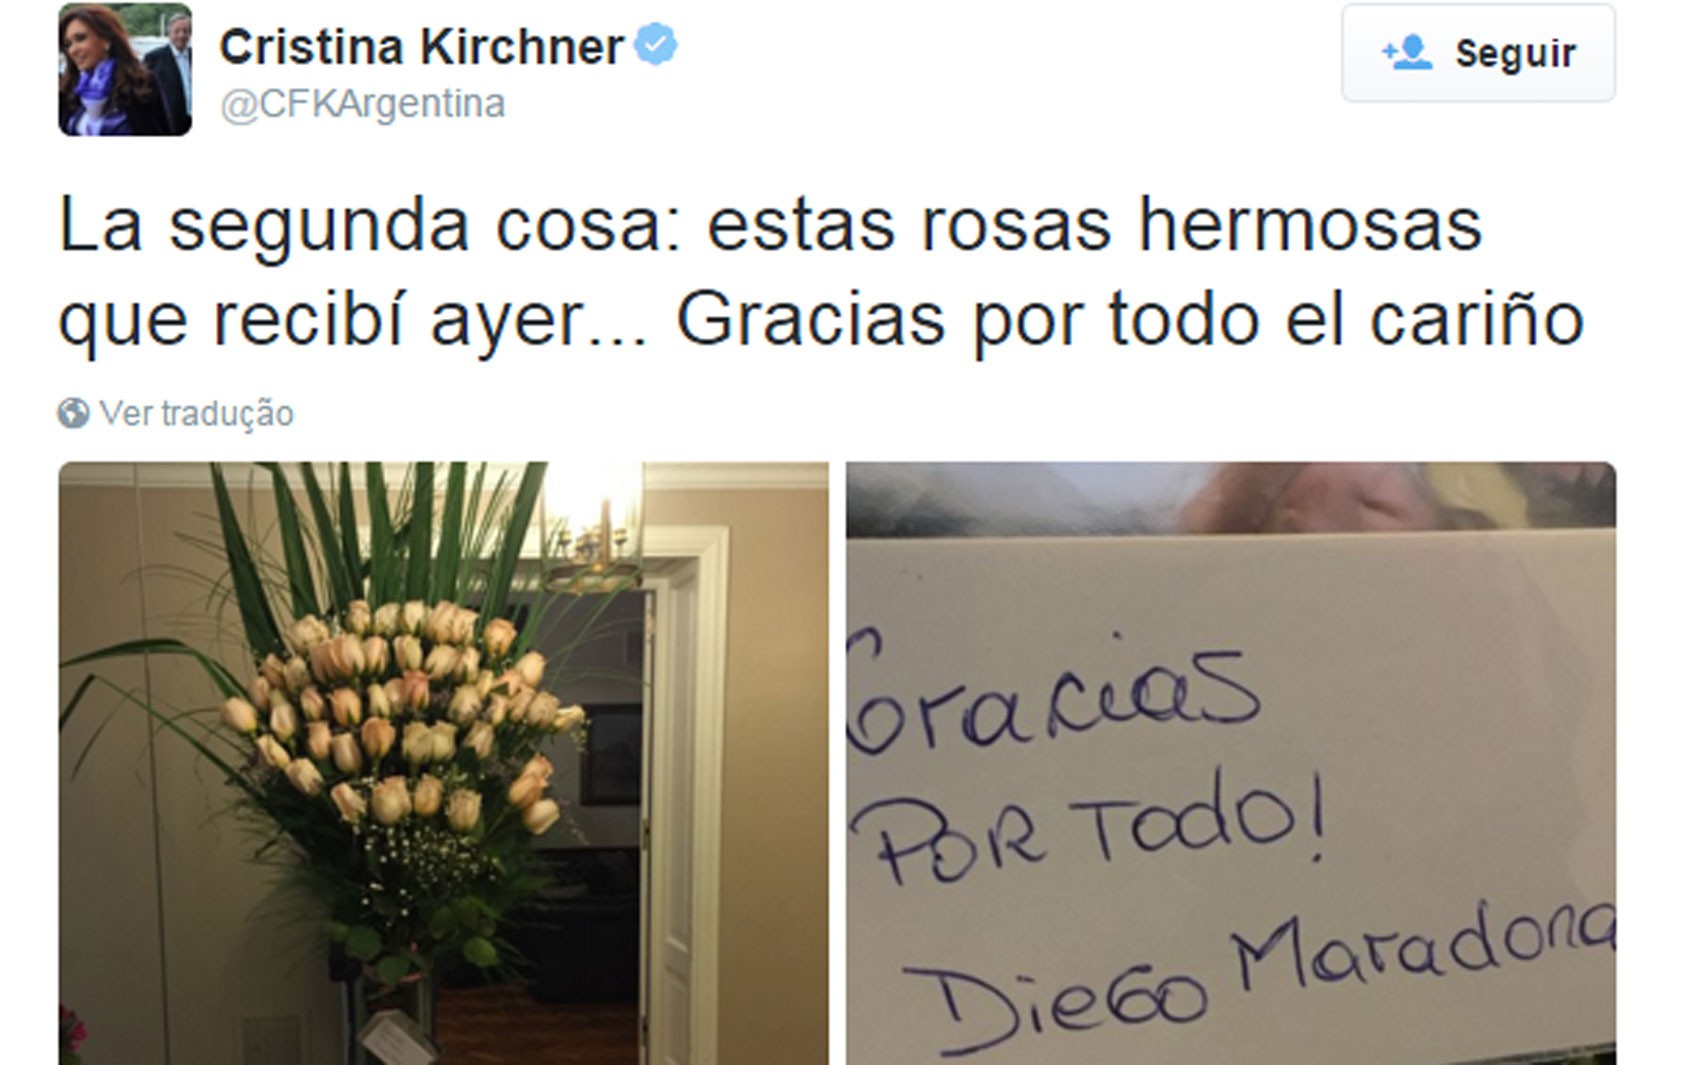 Cristina Kirchner publicou no Twitter fotos das flores e bilhete recebidos de Diego Maradona (Foto: Reprodução/Twitter/Cristina Kirchner)